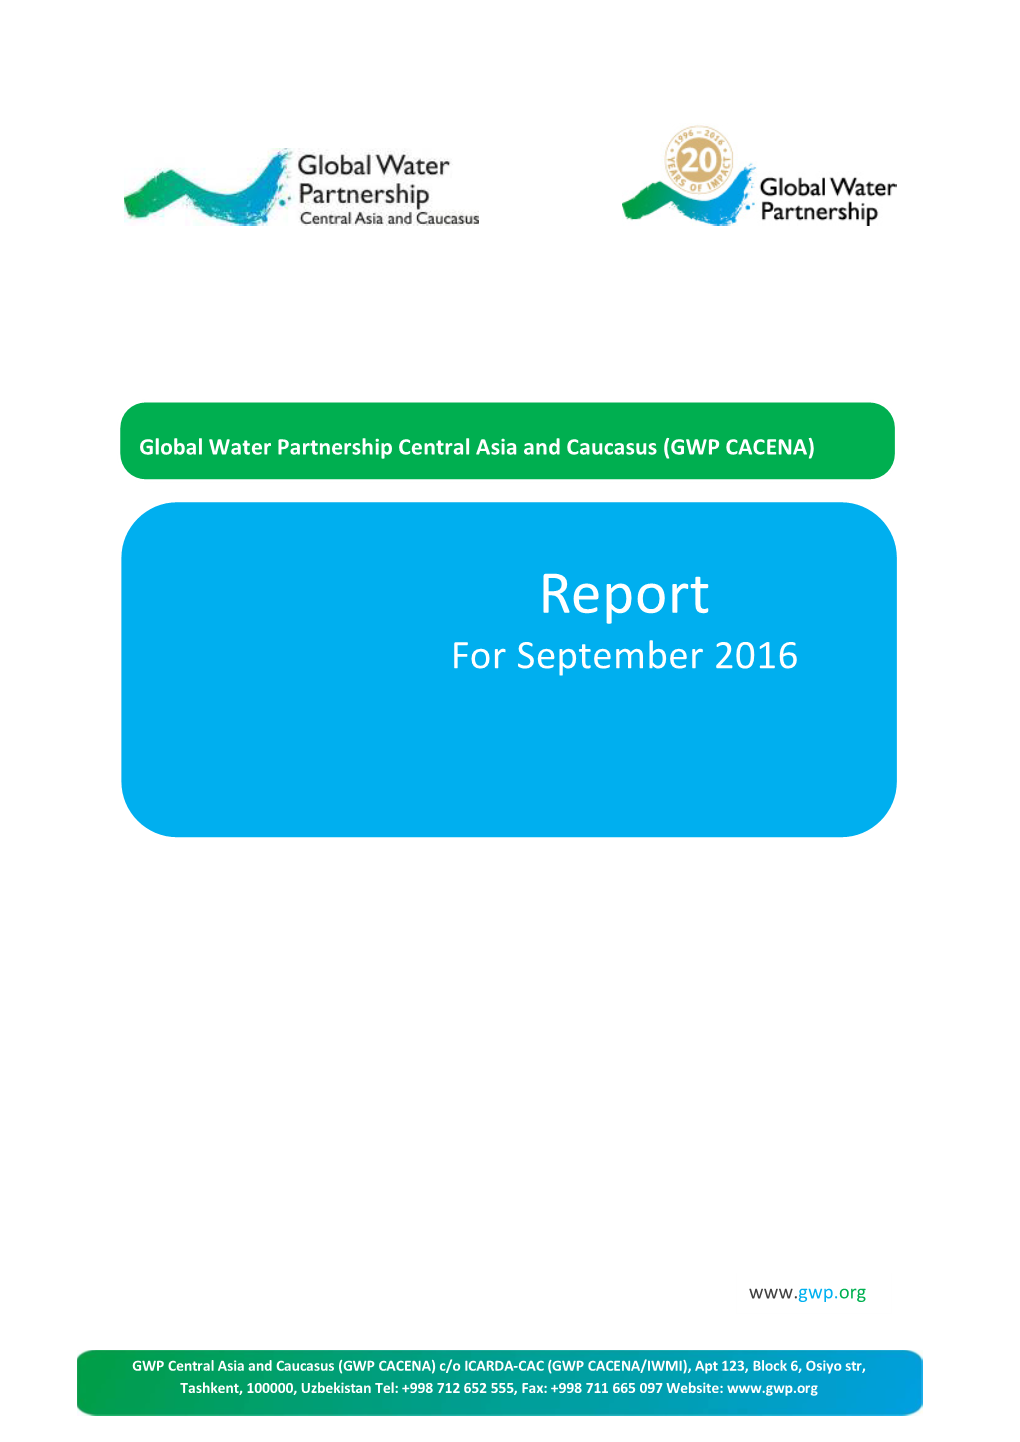 Report for September 2016